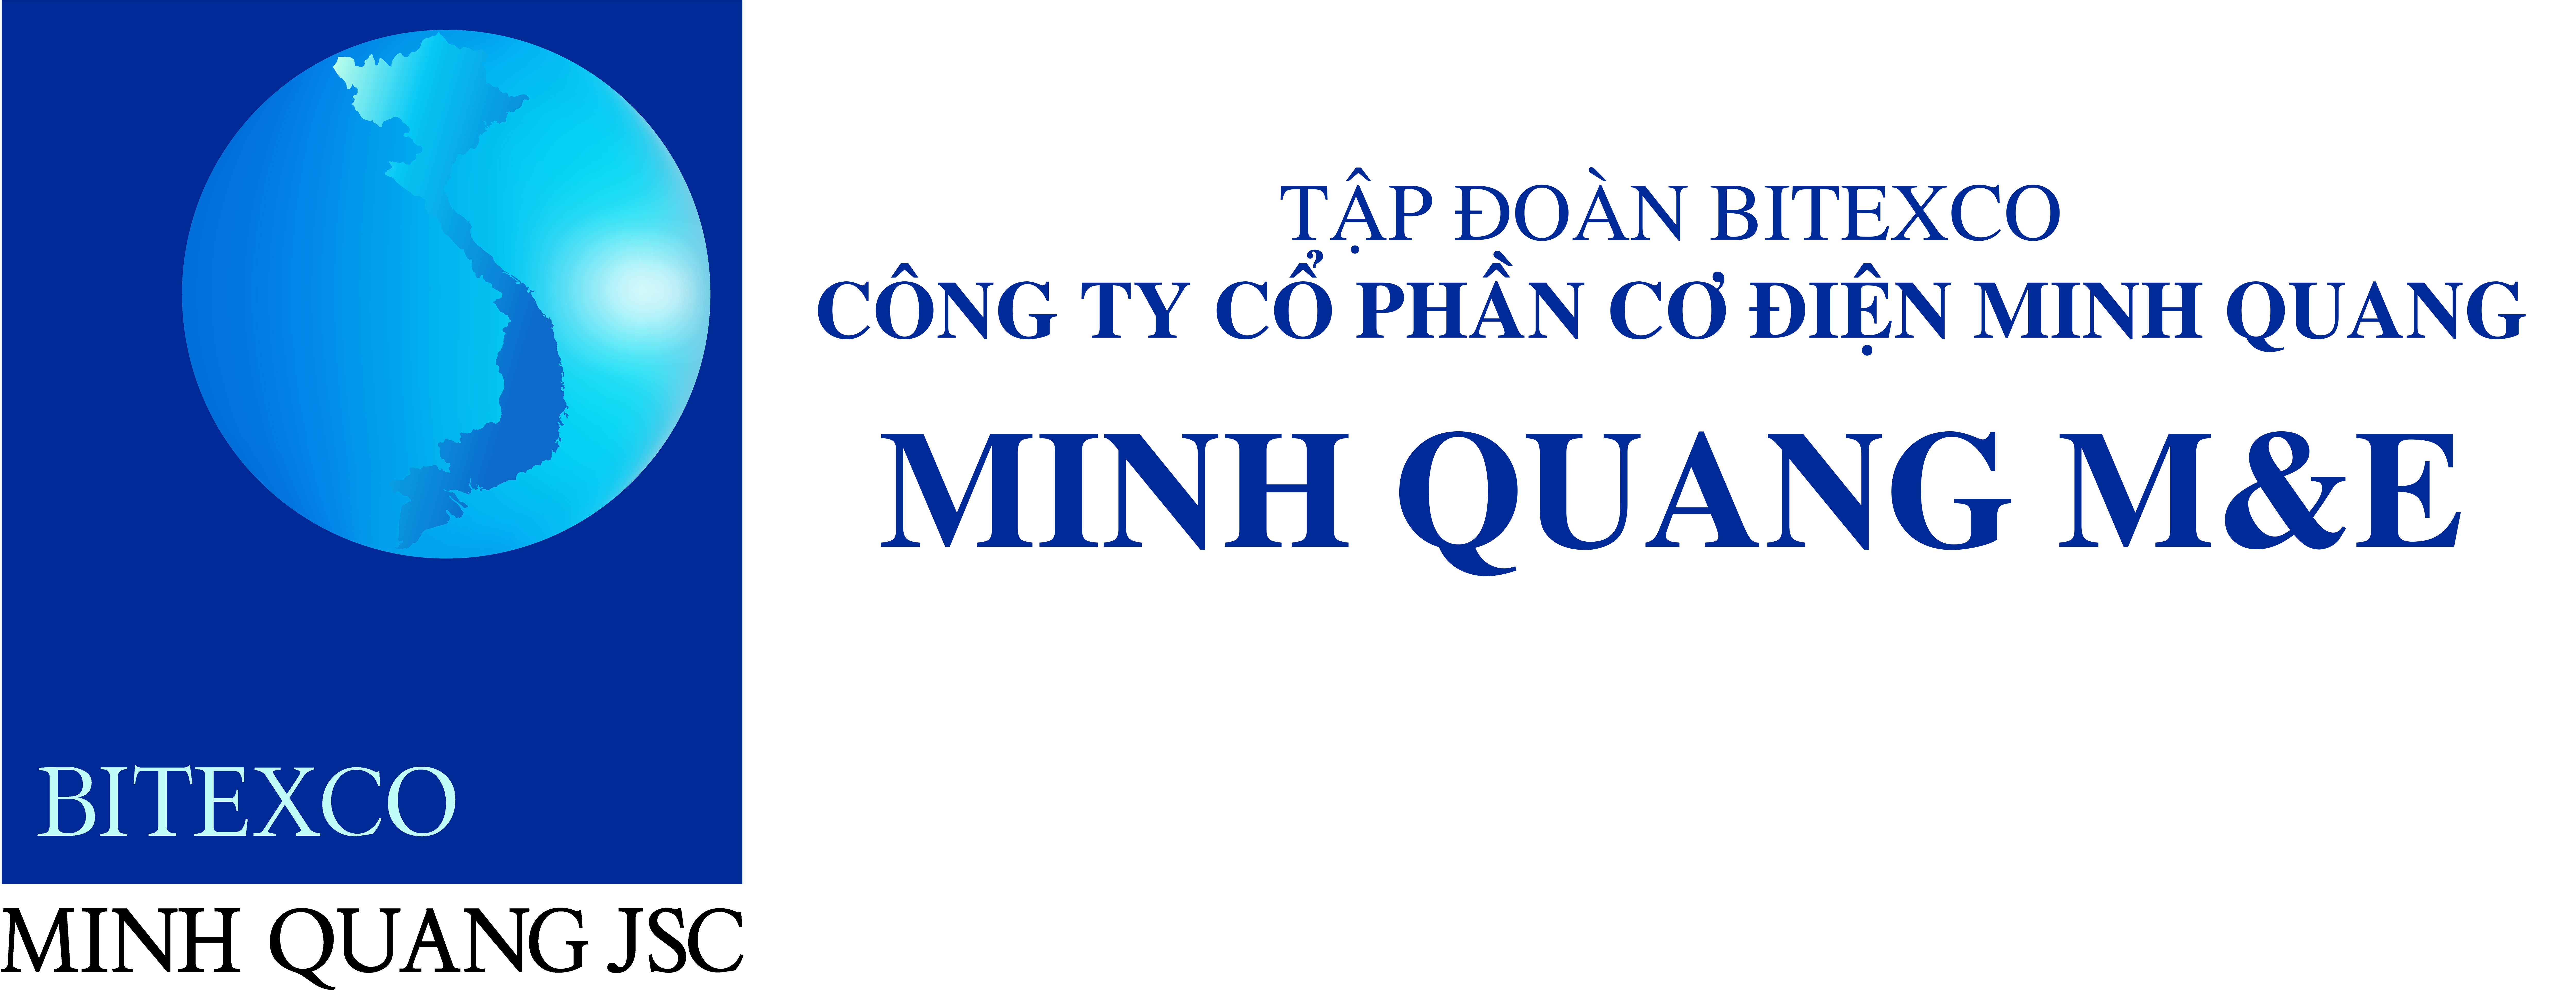 Minh Quang ME